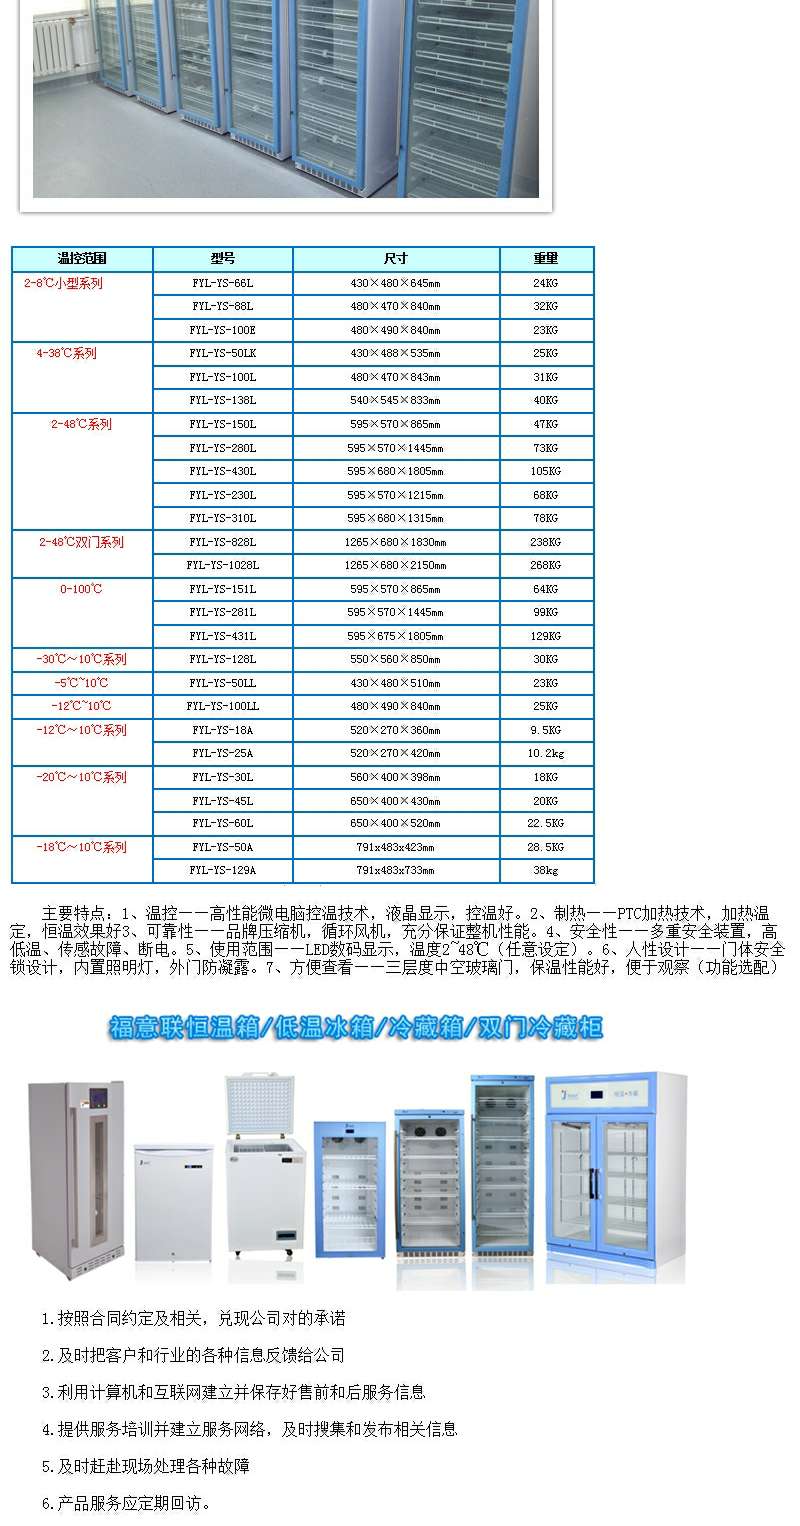 福意联恒温冰柜温度2-48度可调控容积230L技术指导和说明